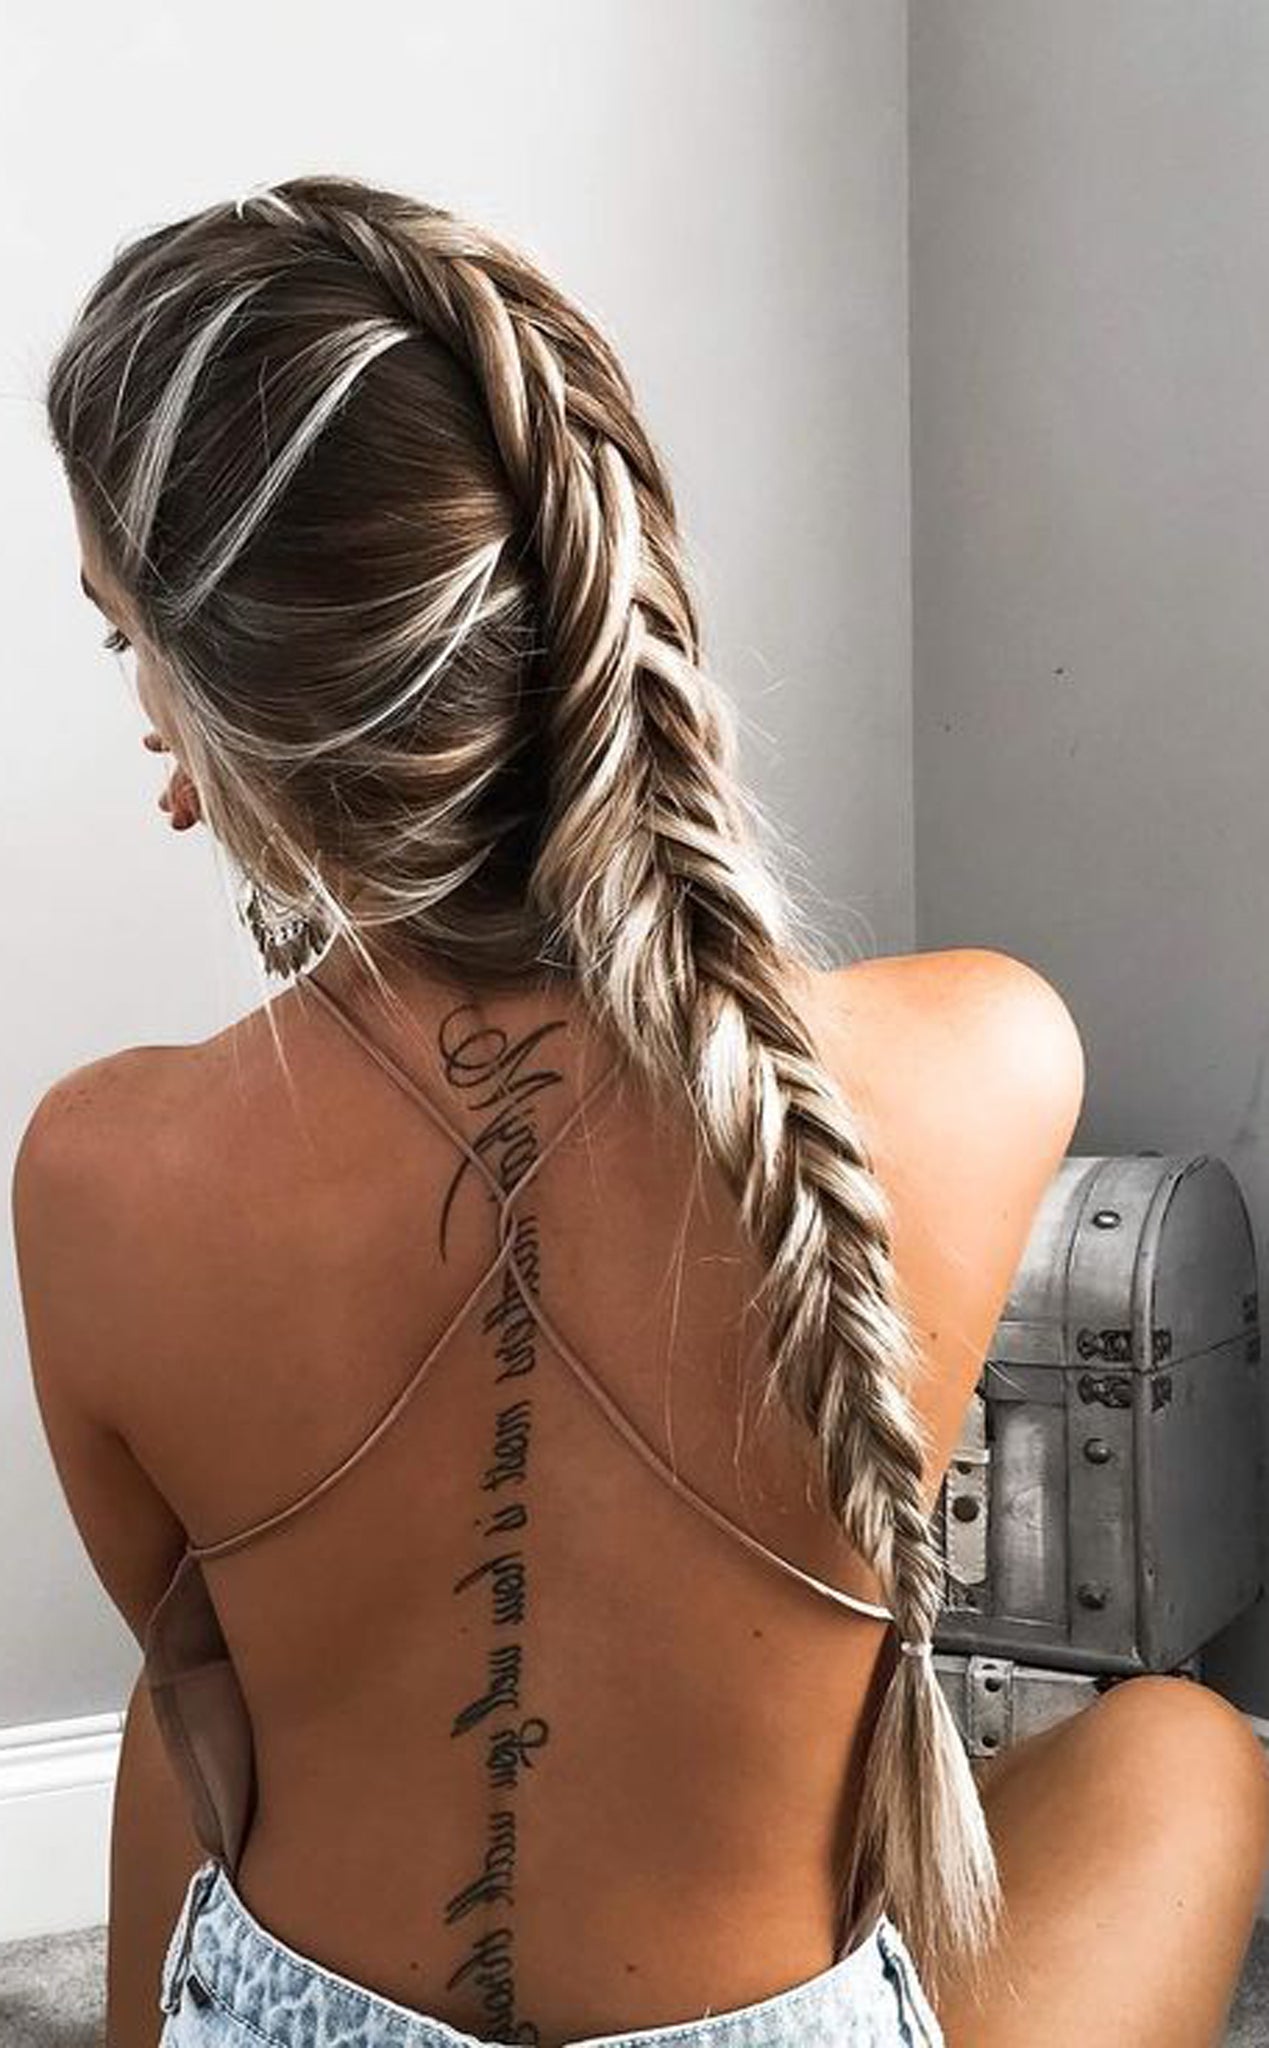 Spine Tattoo Ideas for Women Quotes | TikTok